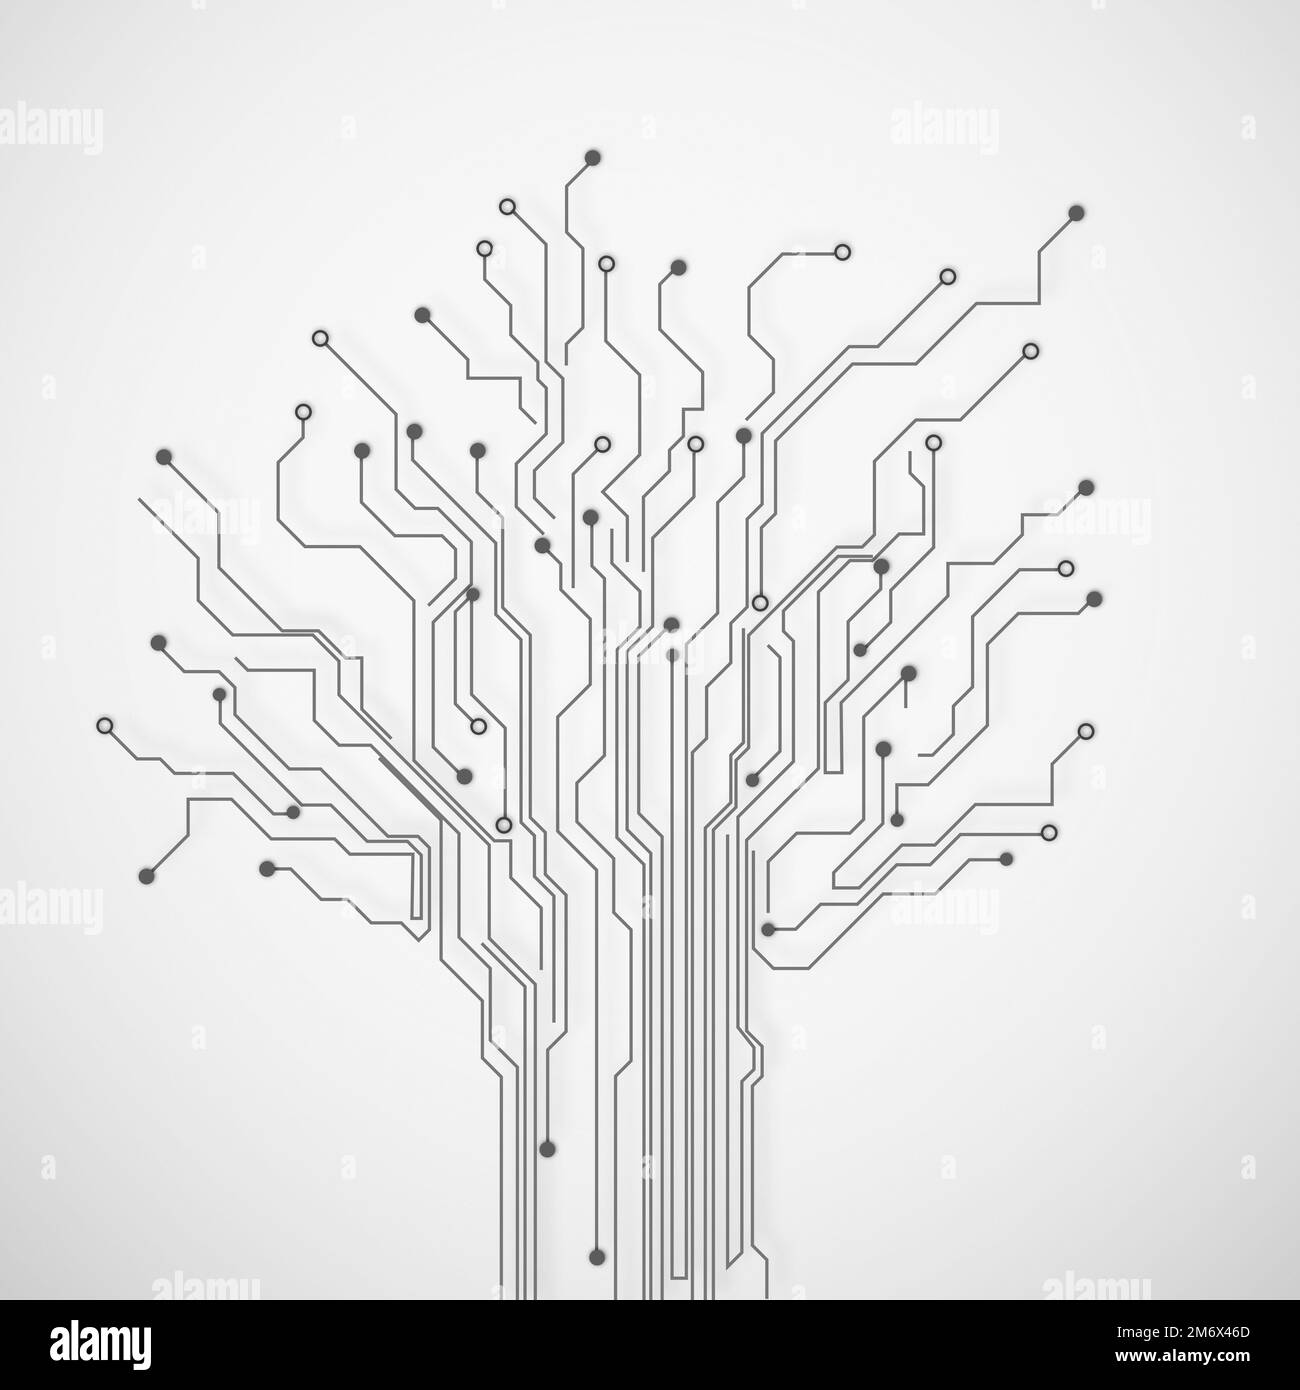 Komplizierte Technologie. Bildausschnitt von Schaltkreisen in Form eines Baumes, isoliert auf Weiß. Stockfoto